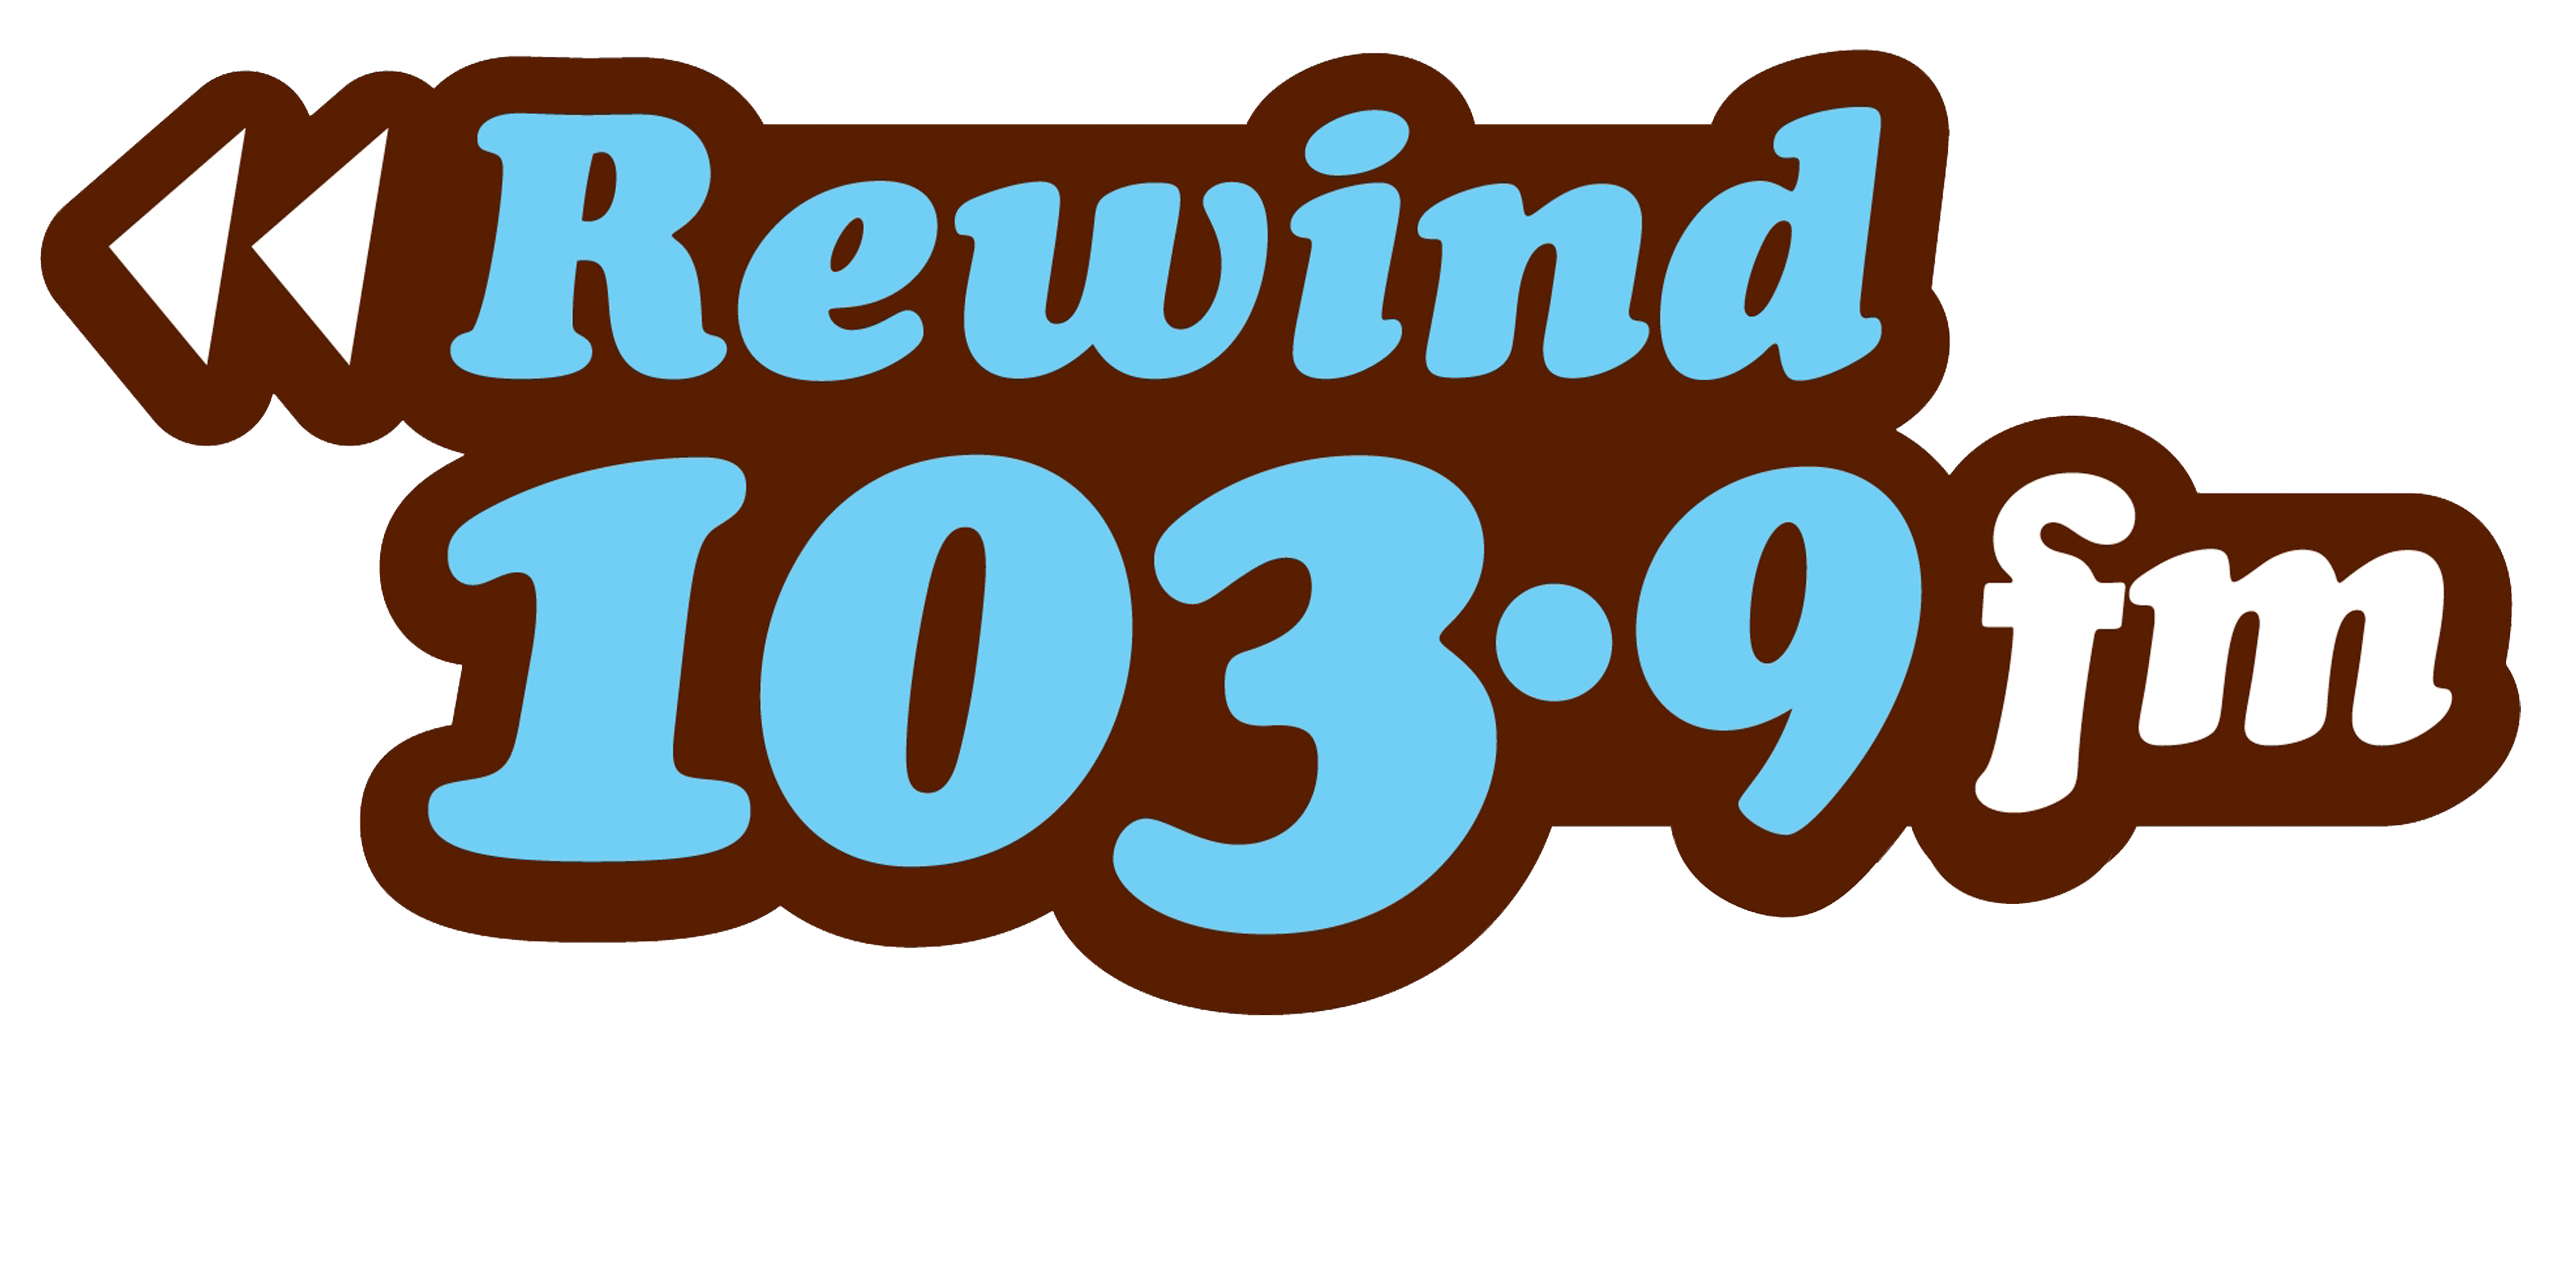 Rewind 103.9